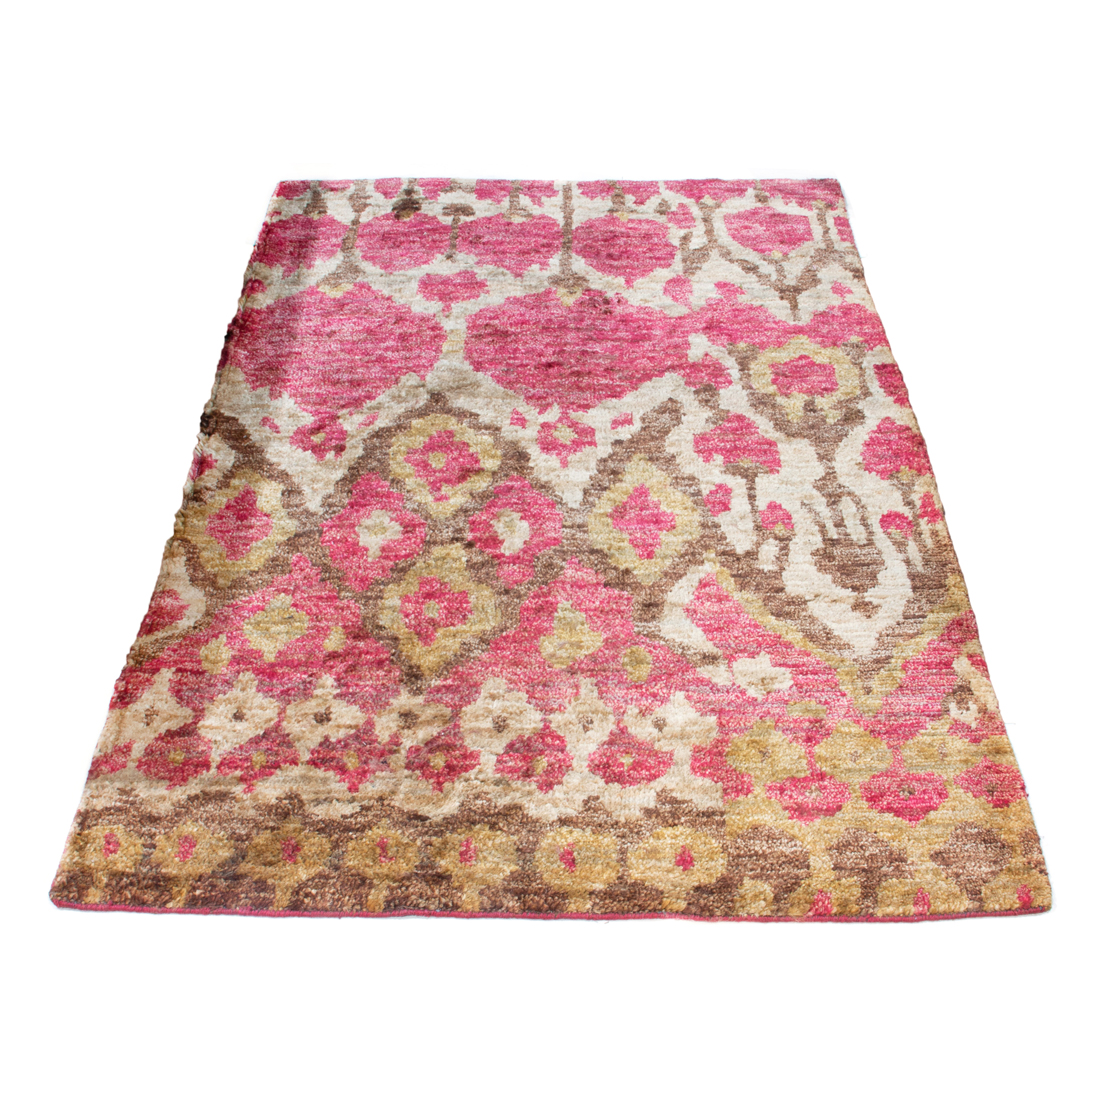 TURKISH CARPET Turkish Carpet,